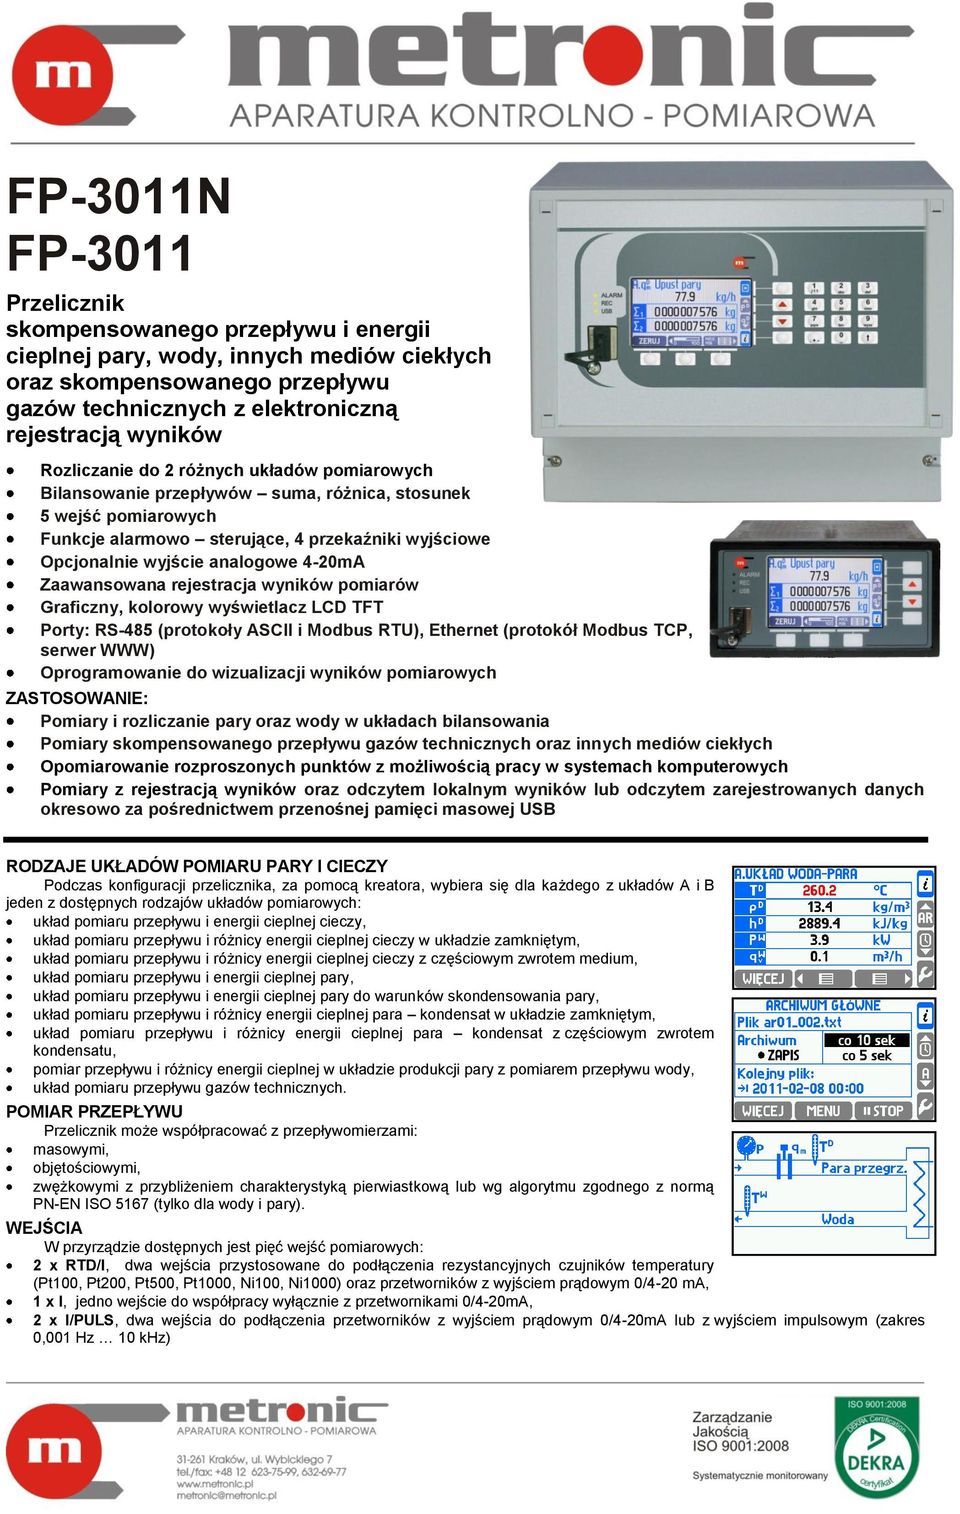 4-20mA Zaawansowana rejestracja wyników pomiarów Graficzny, kolorowy wyświetlacz LCD TFT Porty: RS-485 (protokoły ASCII i Modbus RTU), Ethernet (protokół Modbus TCP, serwer WWW) Oprogramowanie do